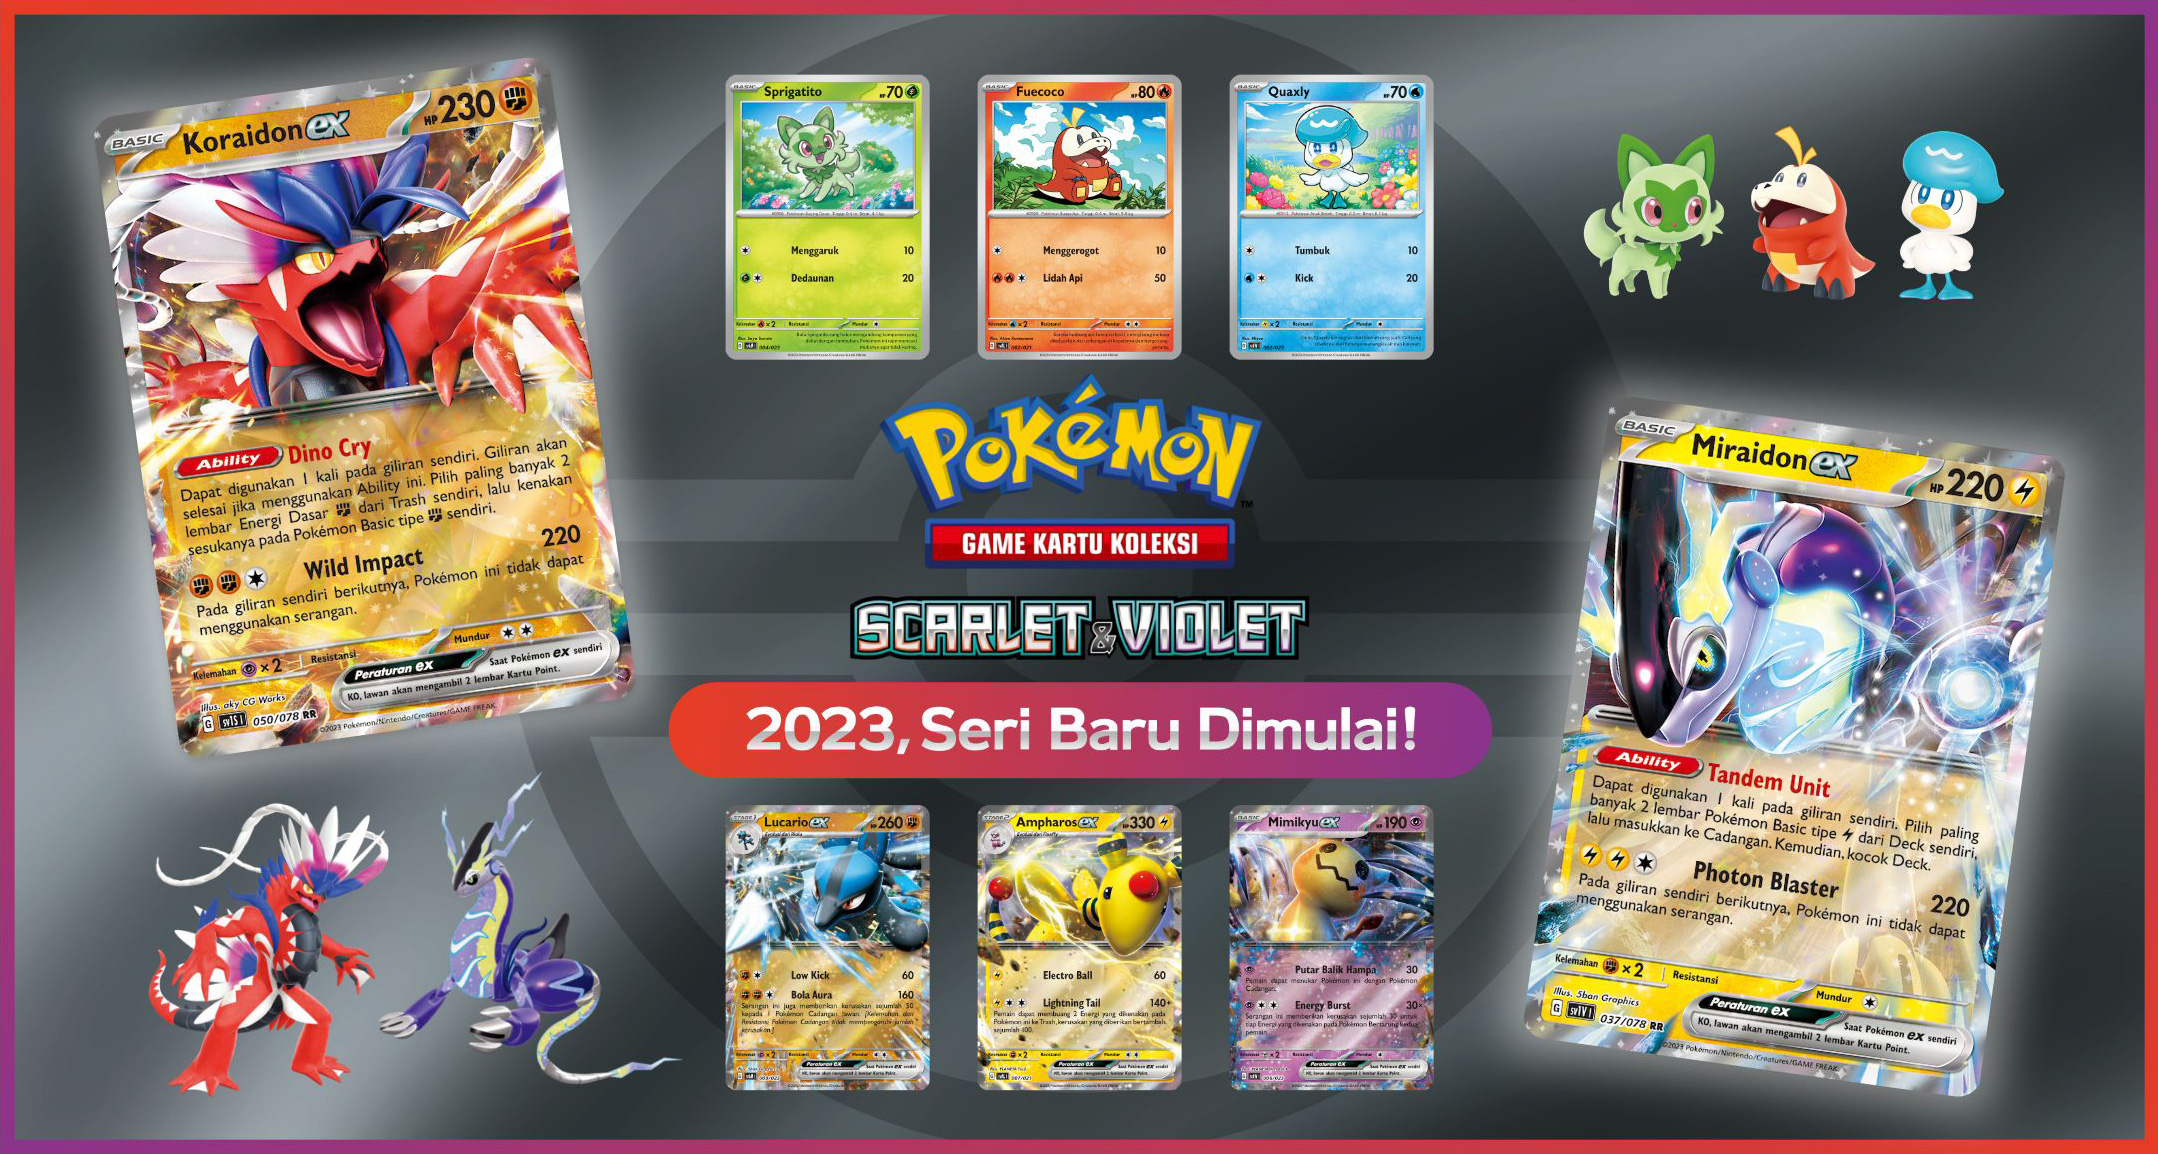 Pokémon Game Kartu Koleksi Scarlet & Violet. 2023, Seri Baru Dimulai!